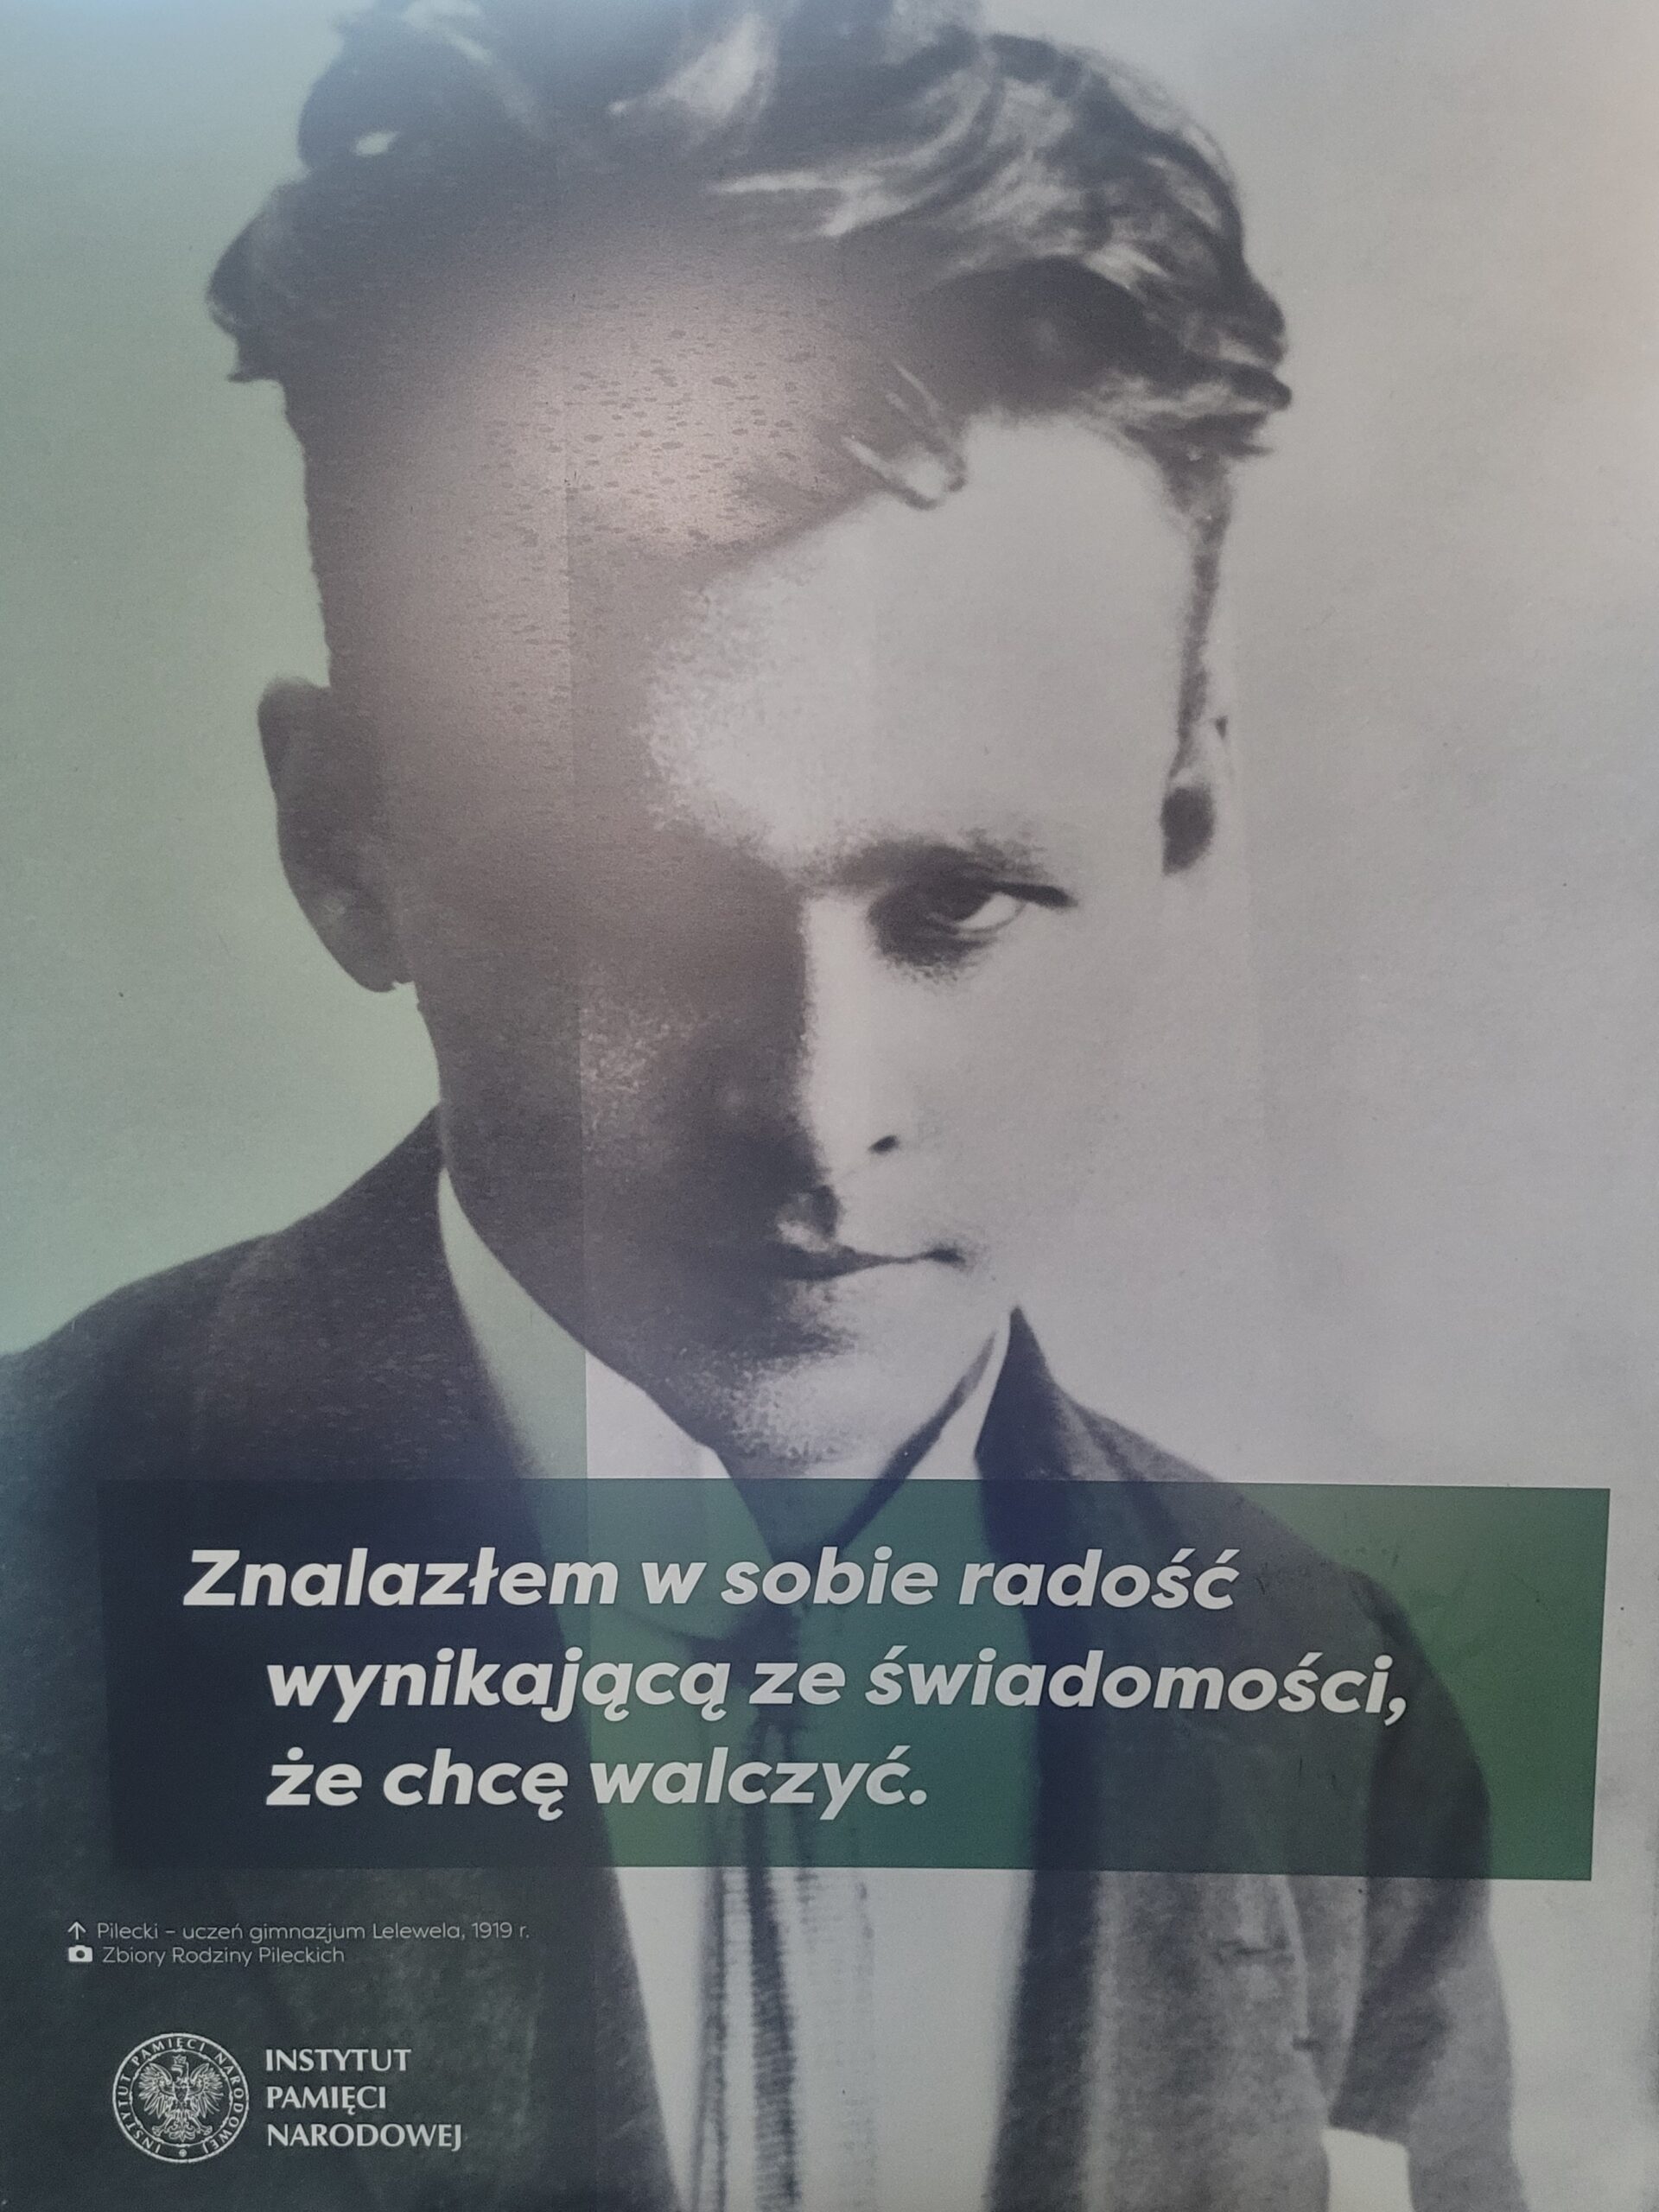 O niezłomnym Witoldzie Pileckim…